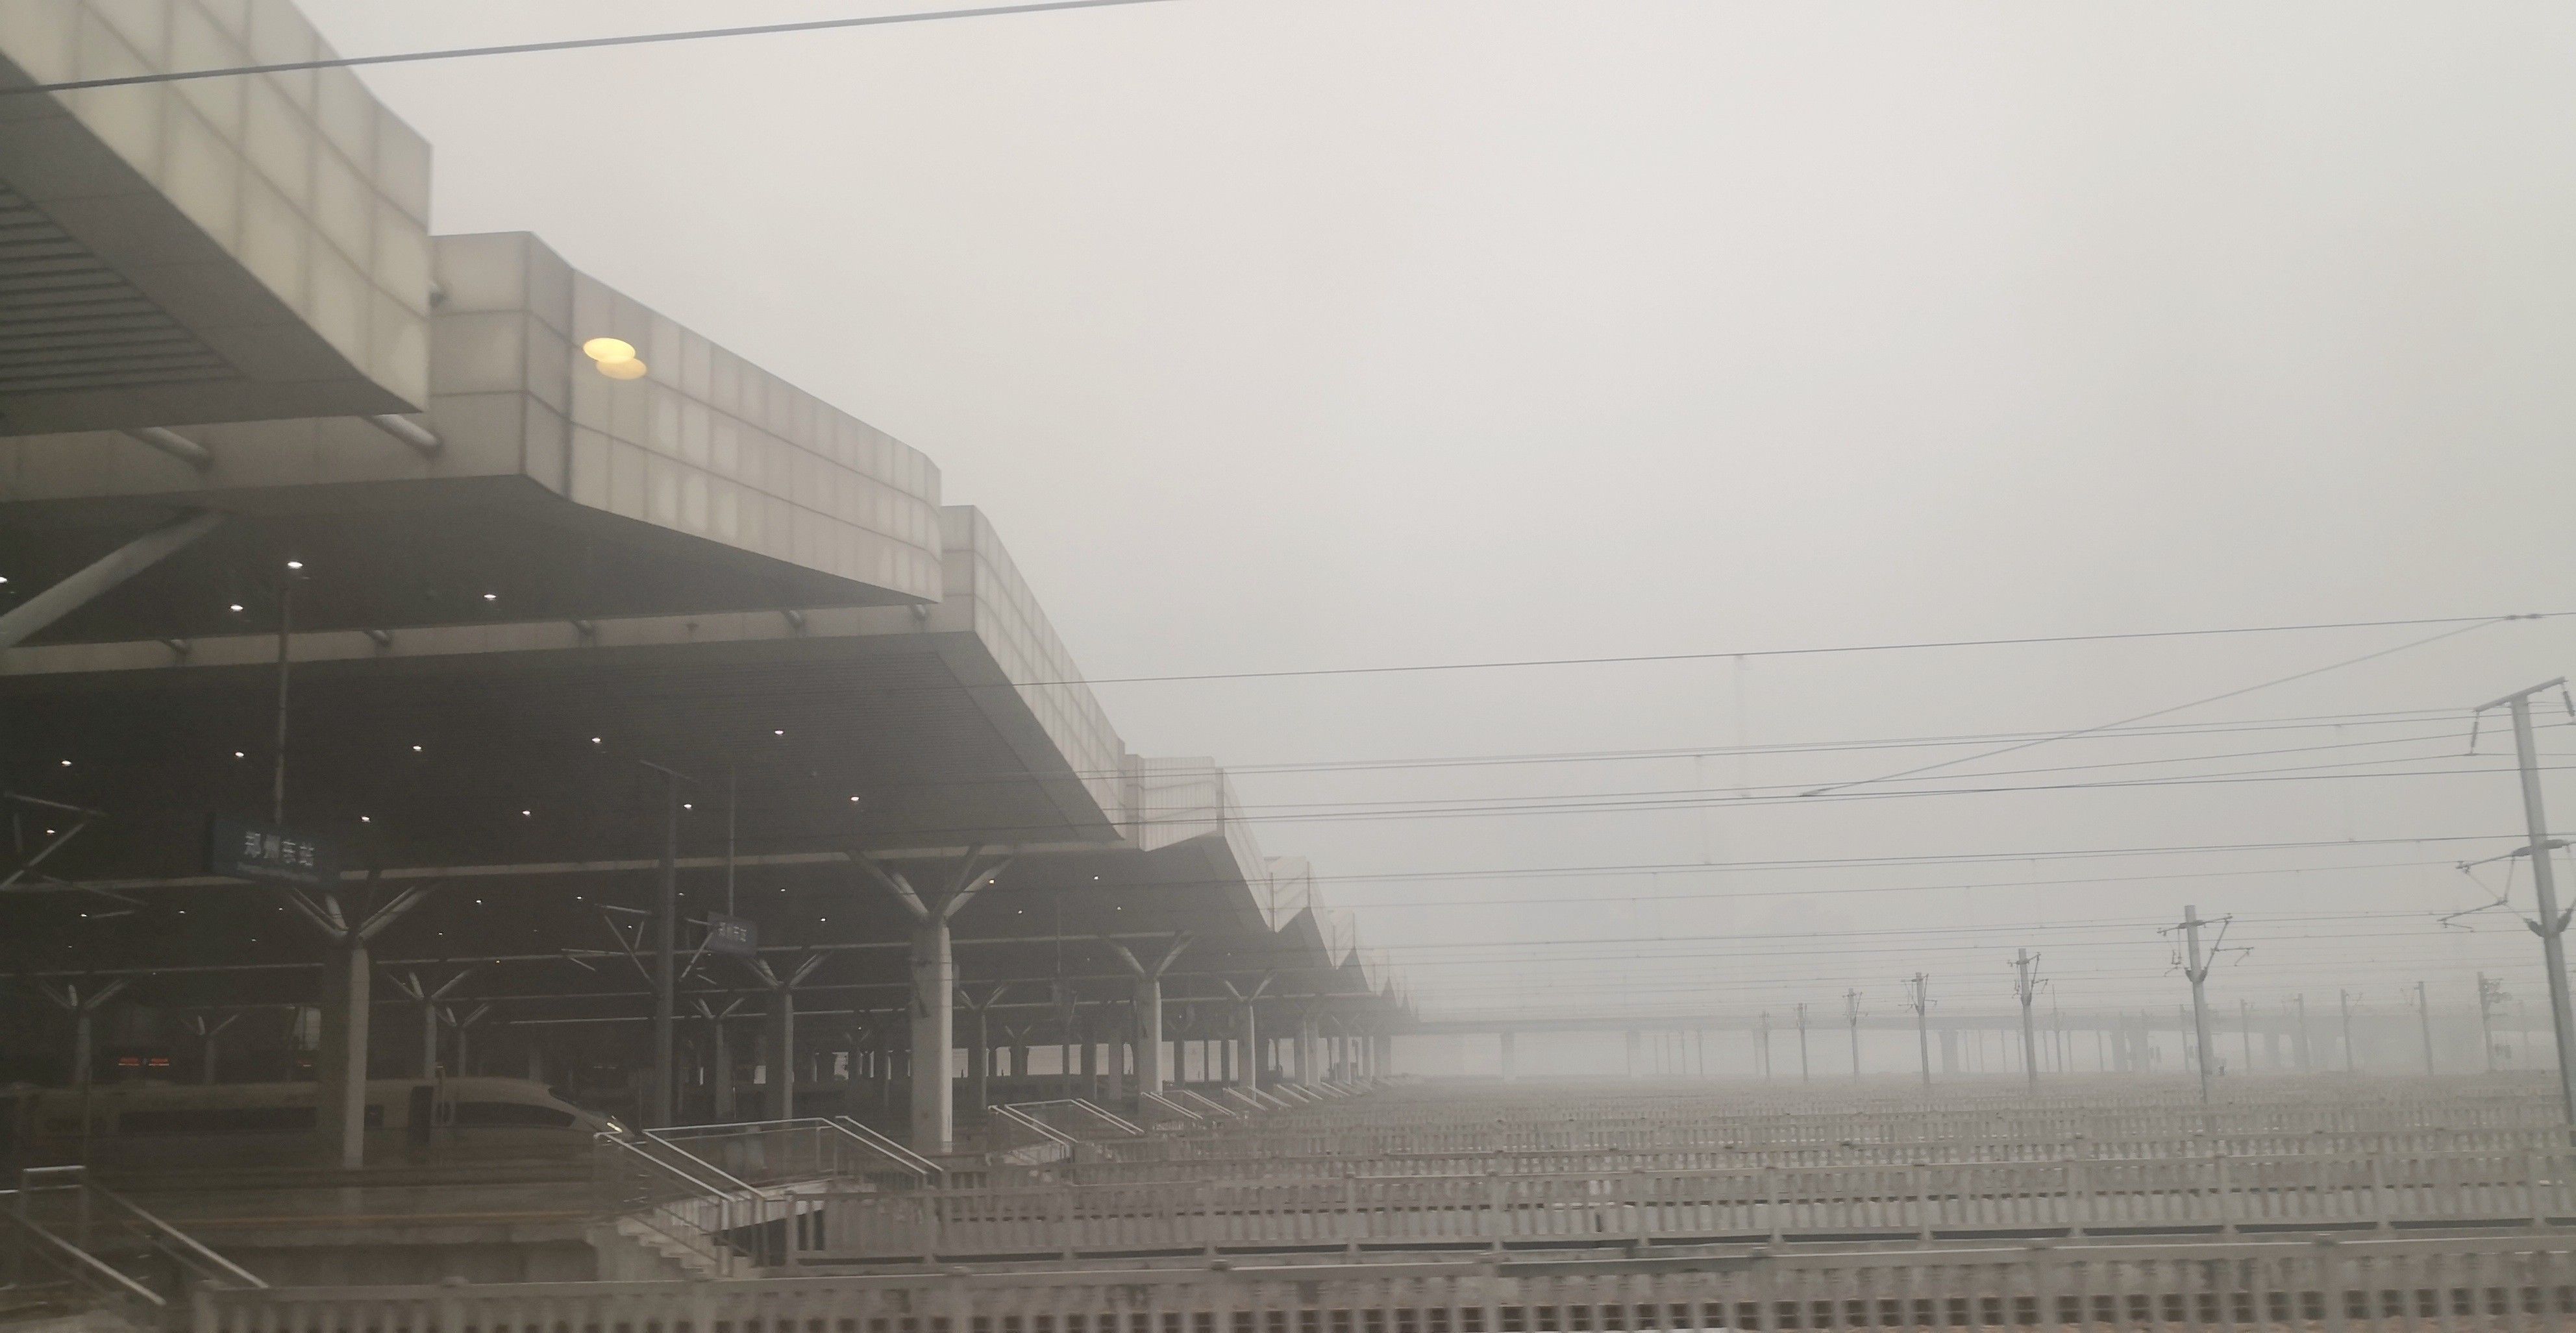 一天之中从北京到四川,高铁上看遍沿途天气,还